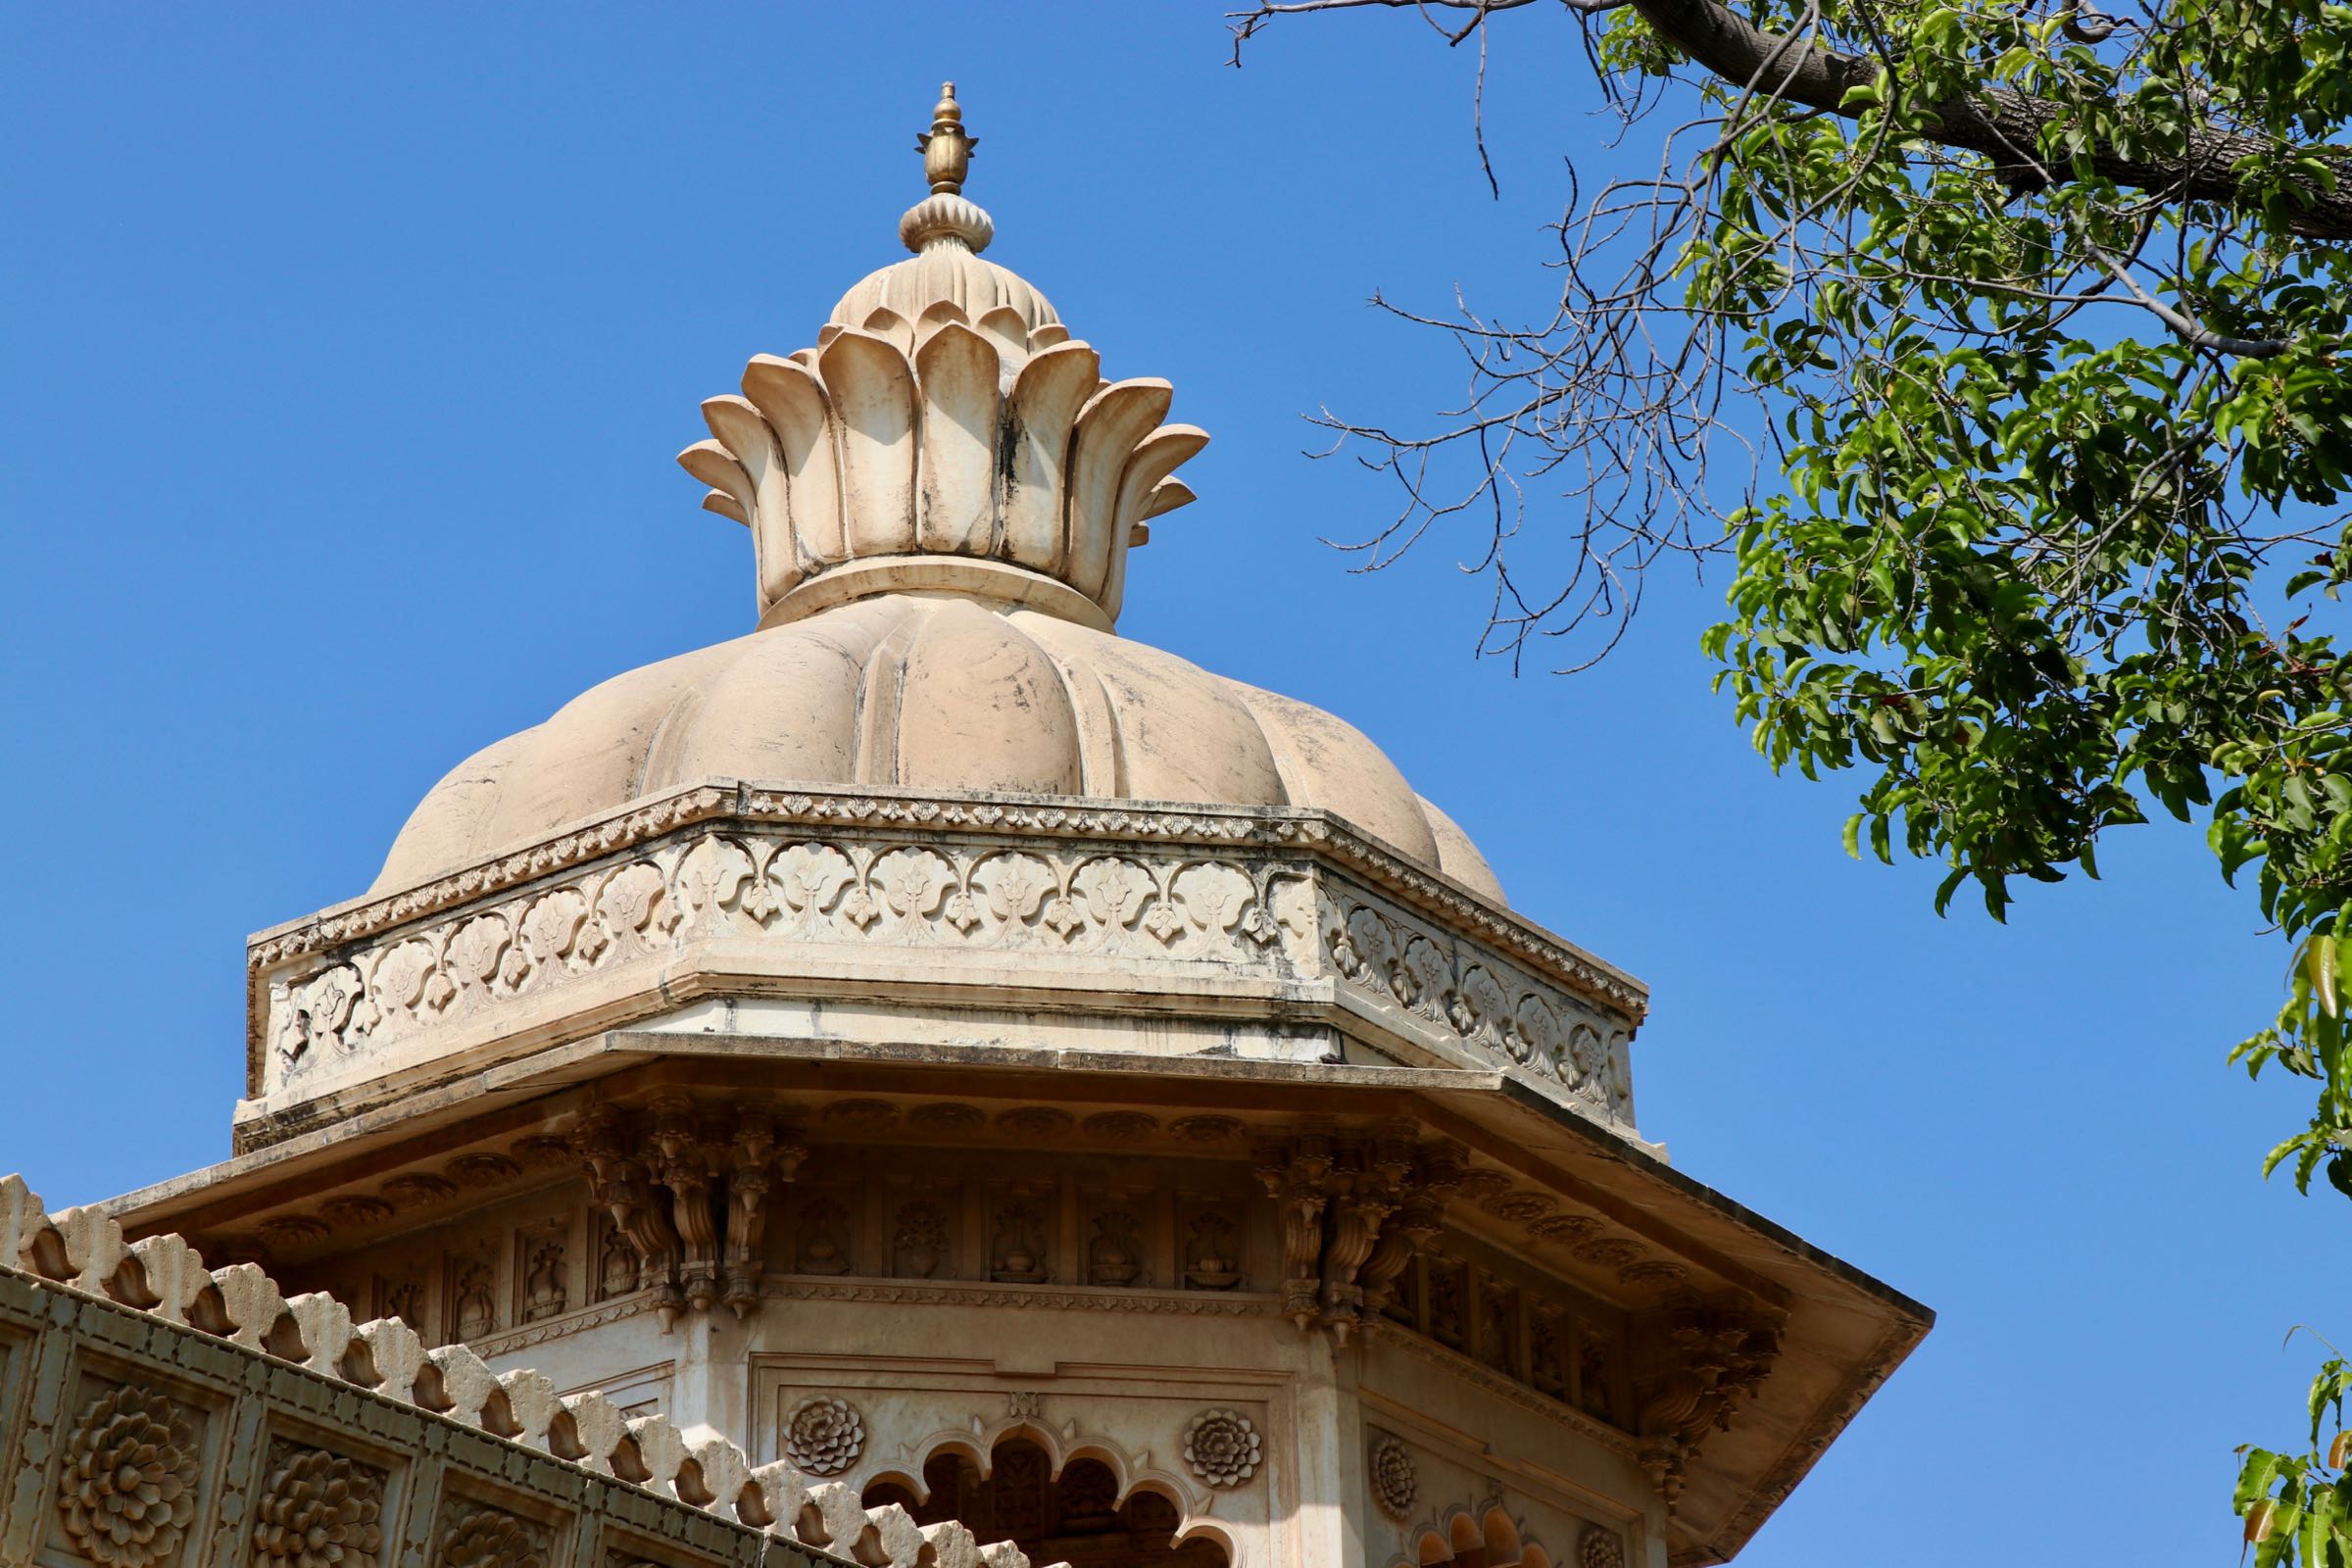 Turm im Stadtpalast von Udaipur, Indien